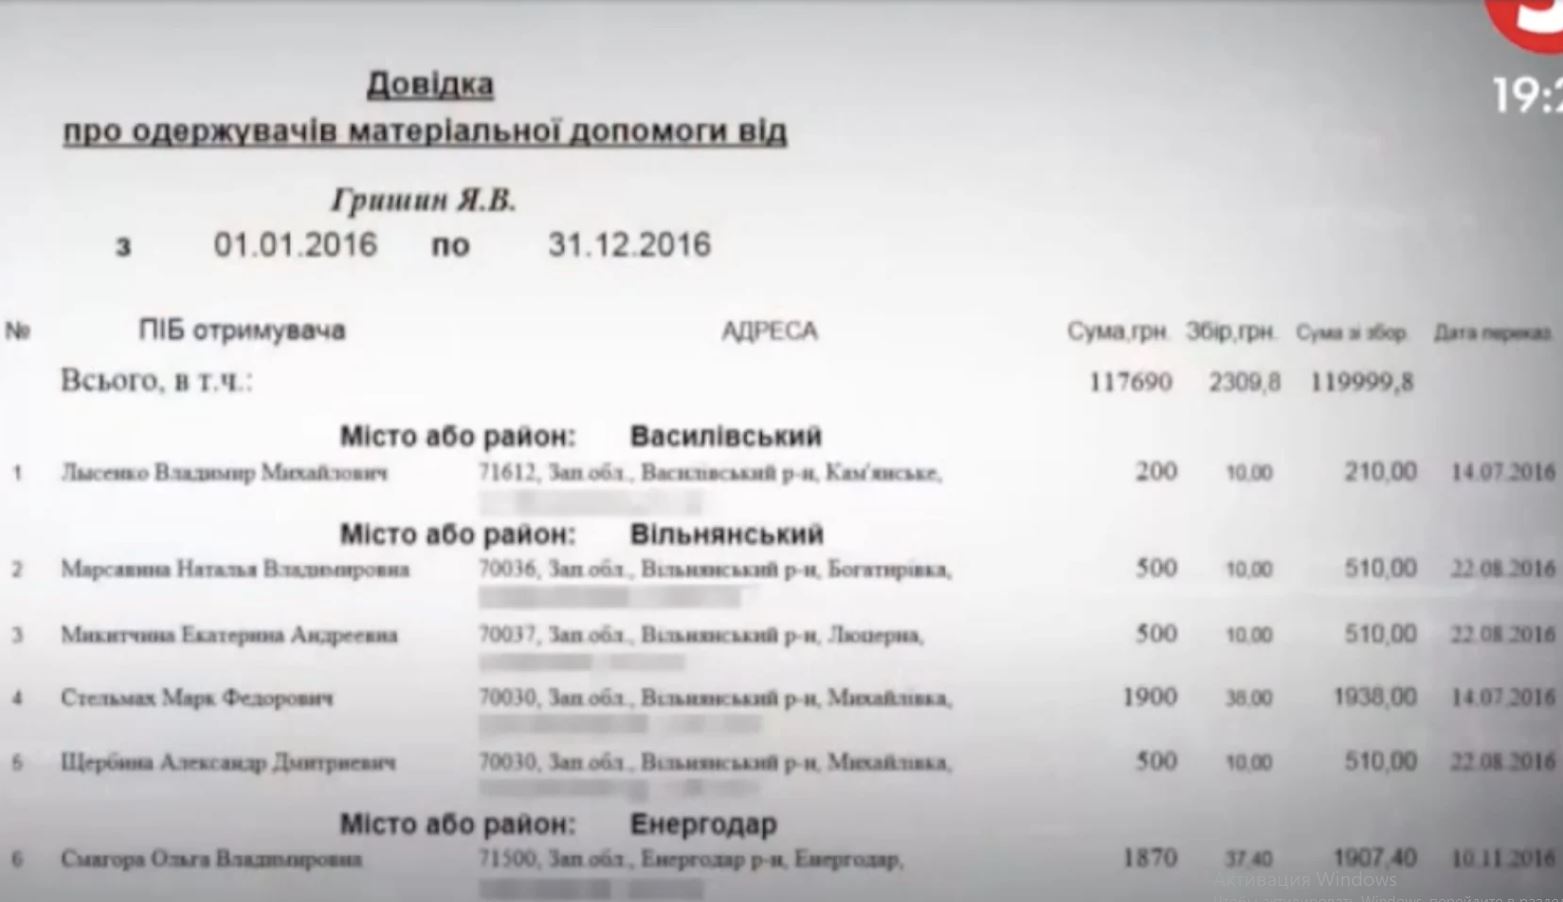 Депутаты ПП "Укроп" Гришин и Прасол задействованы в рейдерстве и схематозах, - расследование